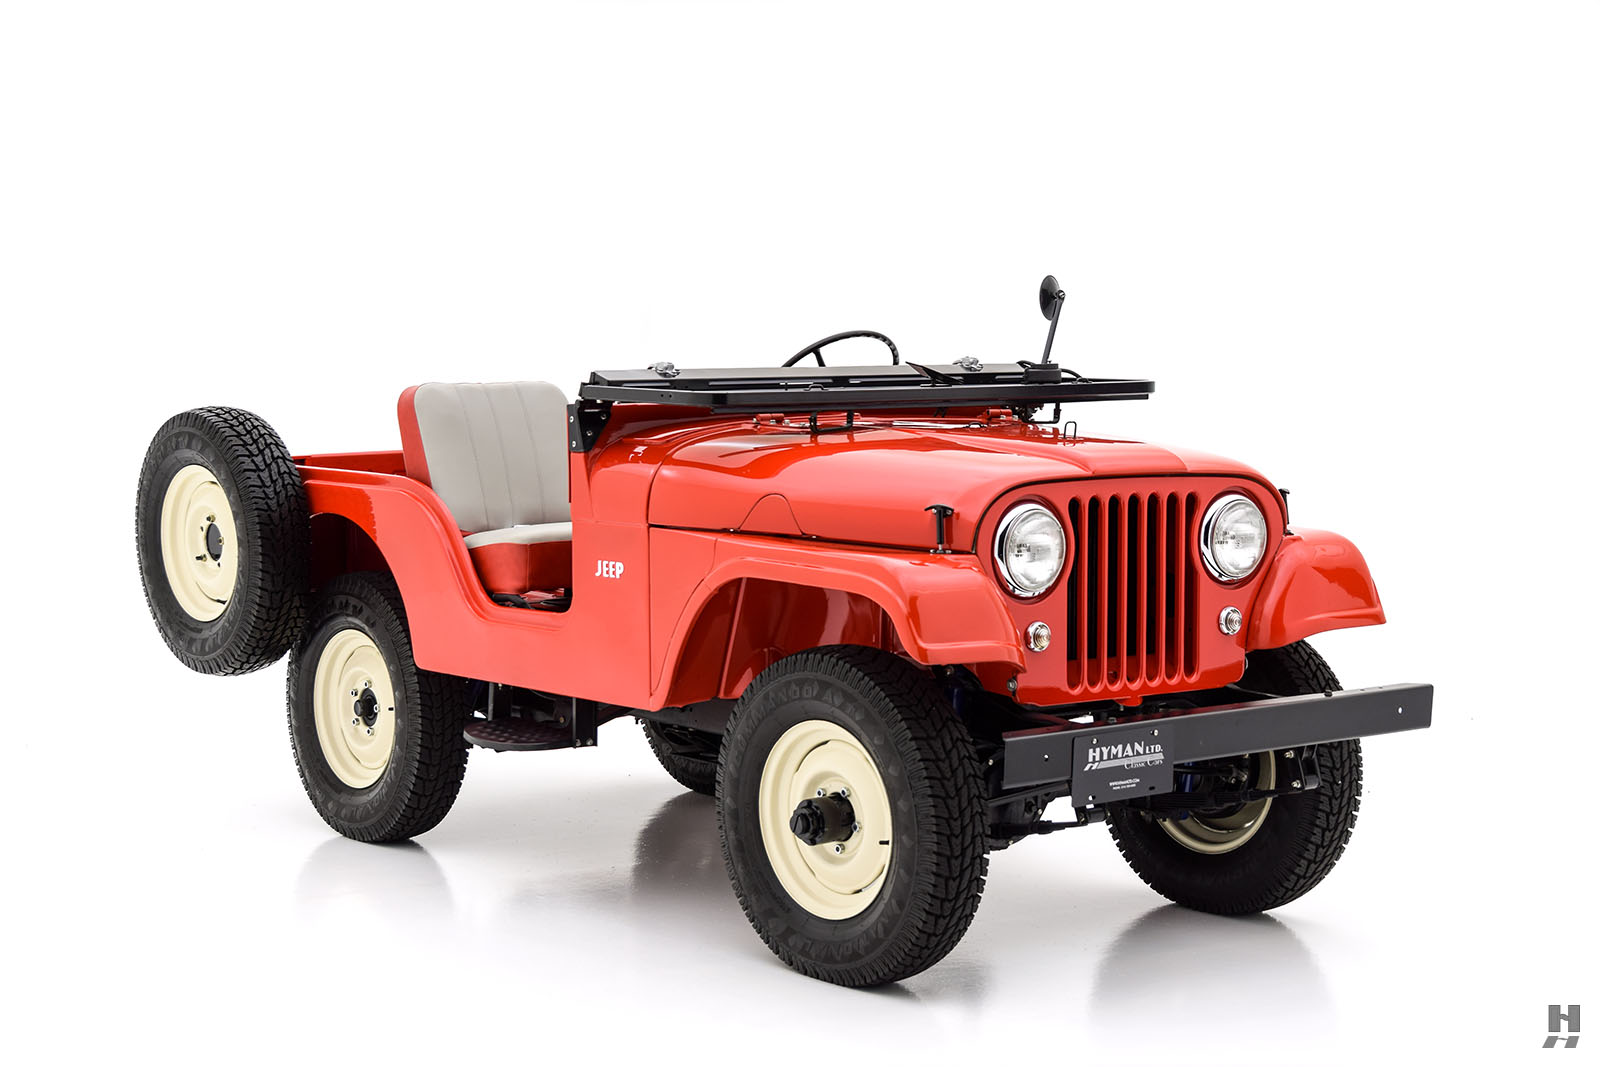 1956 willys-jeep cj-5 1/4 ton